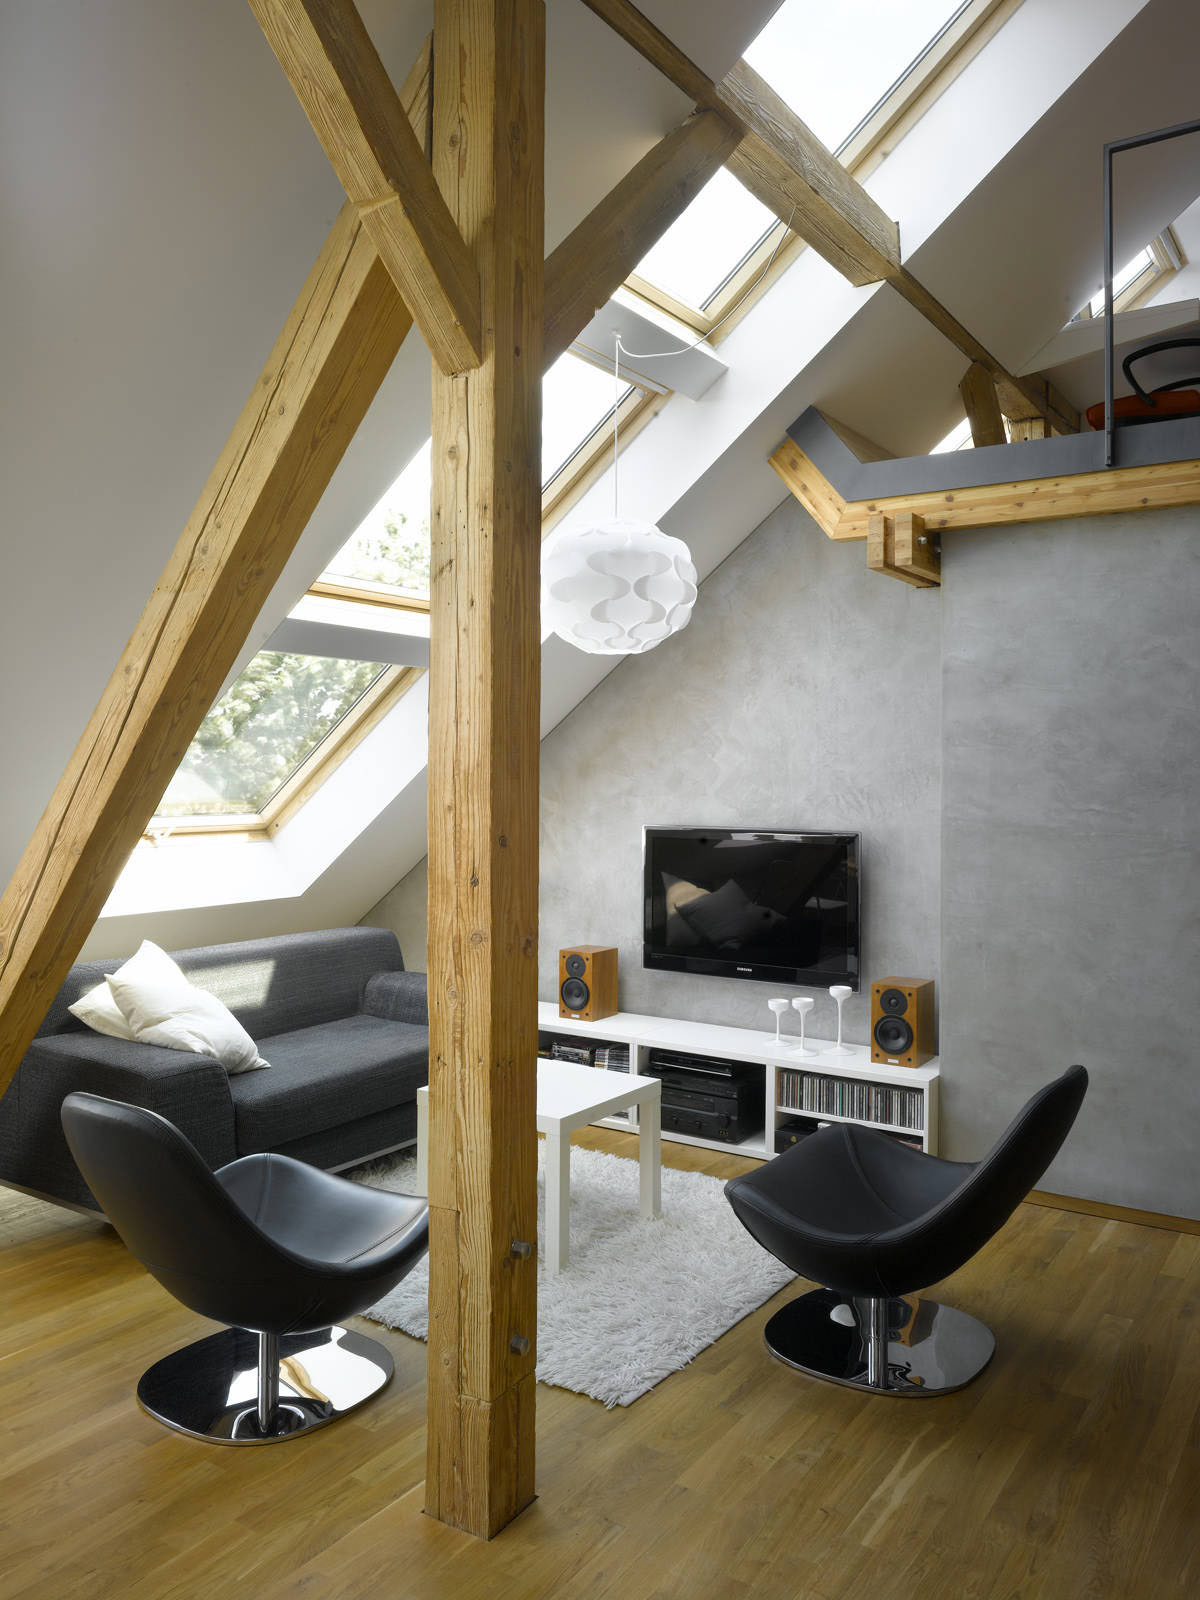 Small Attic Loft Apartment In Prague Idesignarch Interior Design Architecture Interior Decorating Emagazine